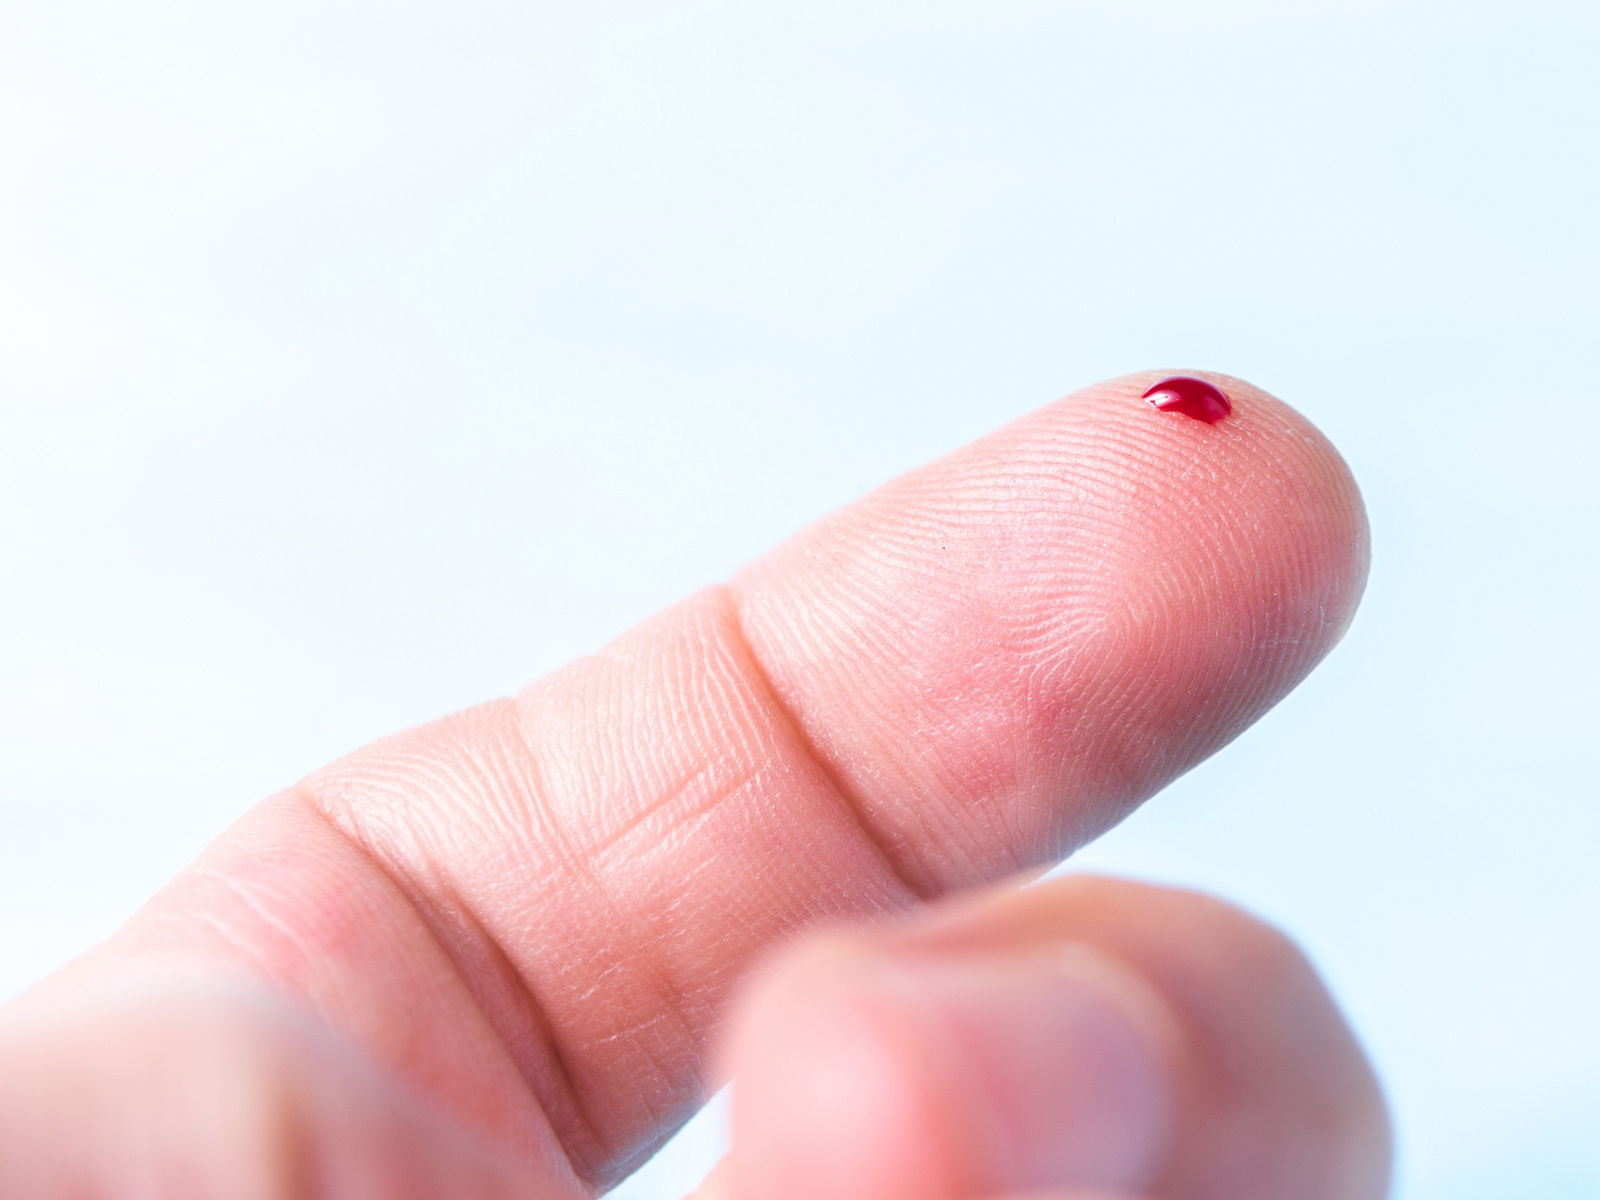 Zeigefinger in Nahaufnahme mit kleinem Bluttropfen